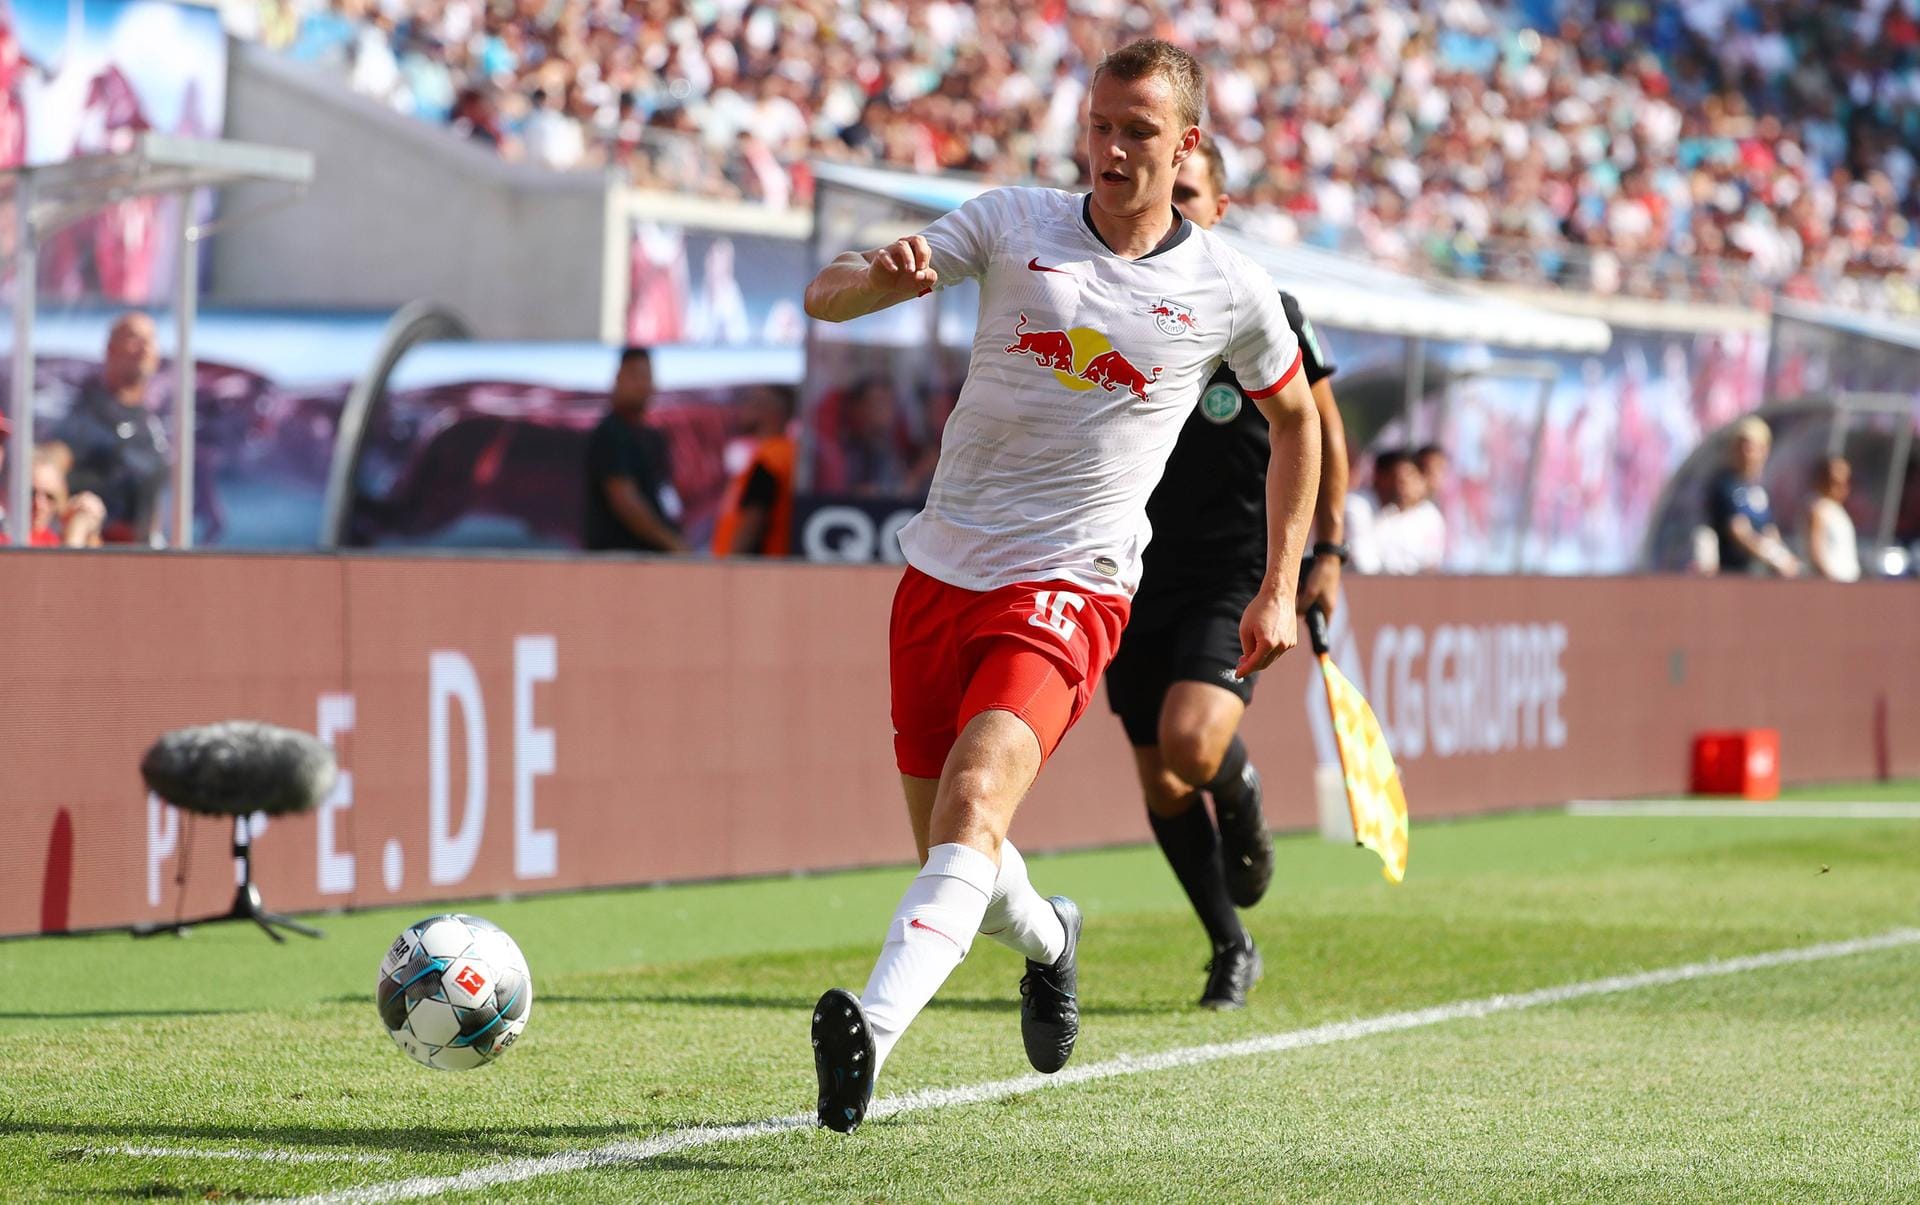 Lukas Klostermann: Der Nationalspieler und RB-Kapitän ist bei Leipzig gesetzt. Und das, obwohl er erst 23 Jahre alt ist. Eines der größten Defensiv-Talente Deutschlands.